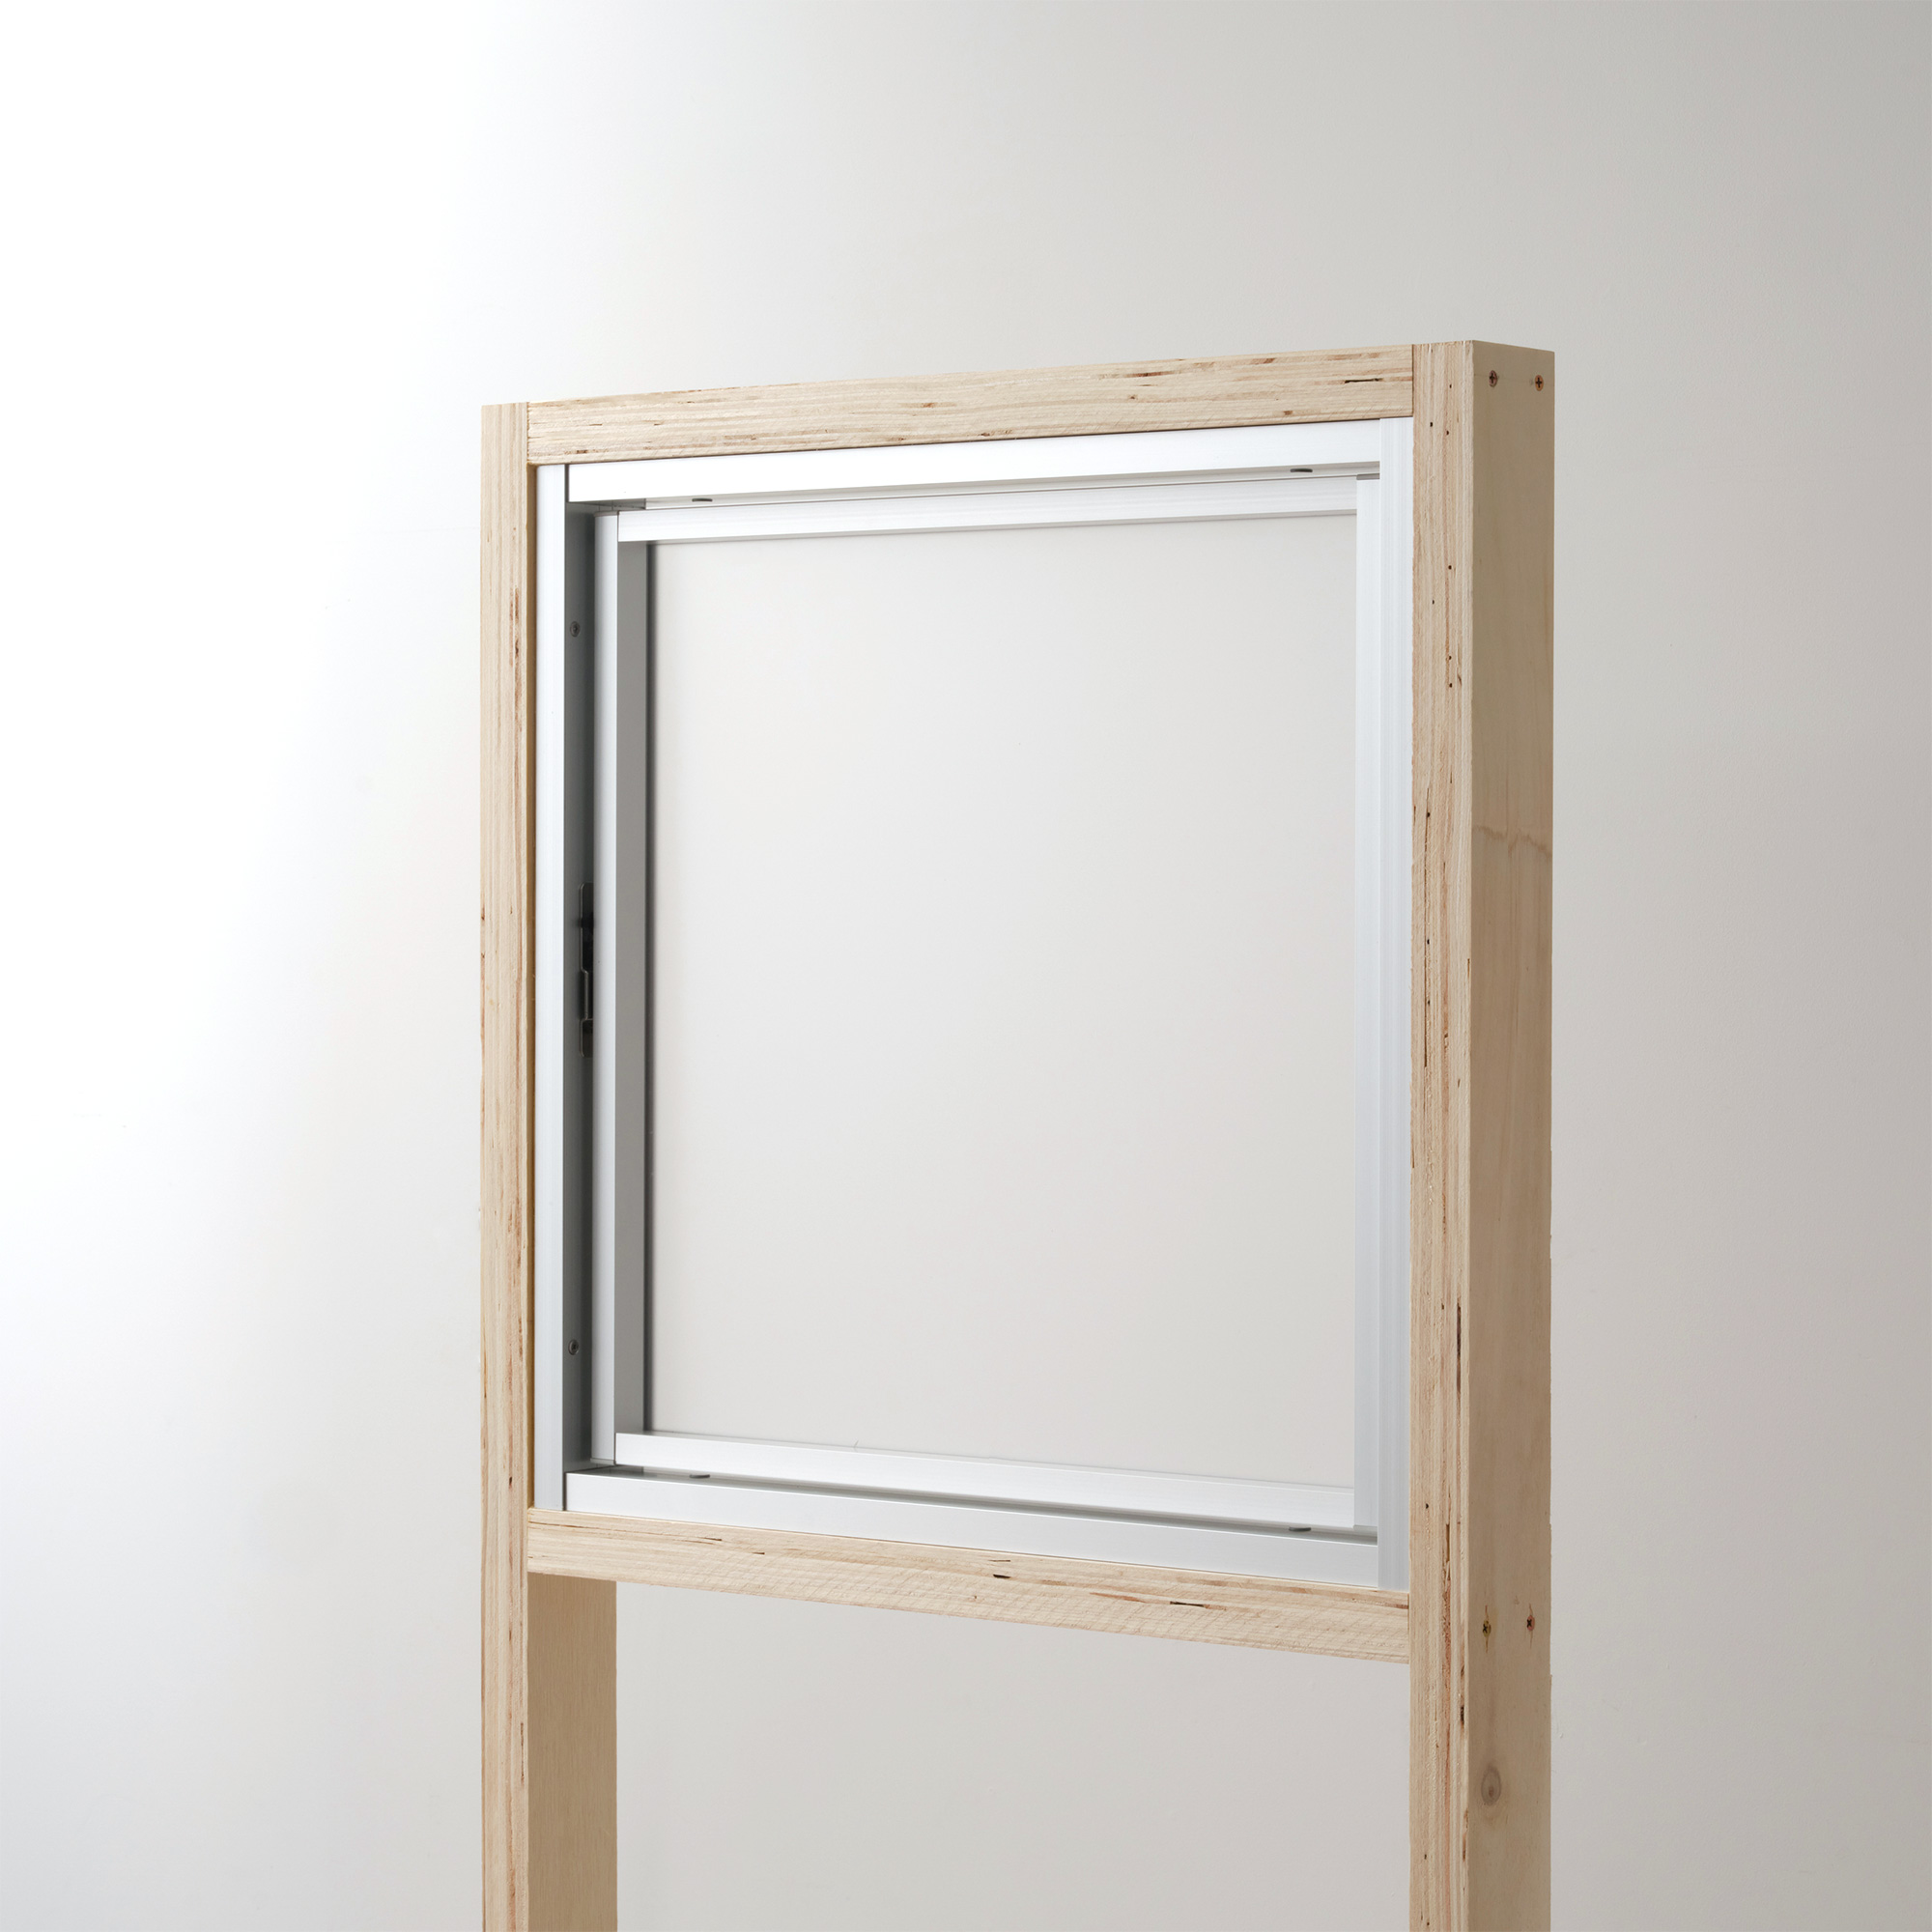 室内アルミサッシ FIX窓＋回転窓 シルバー 樹脂パネル DW-DR013-16-G201 回転窓 W500 H500 マット樹脂パネル